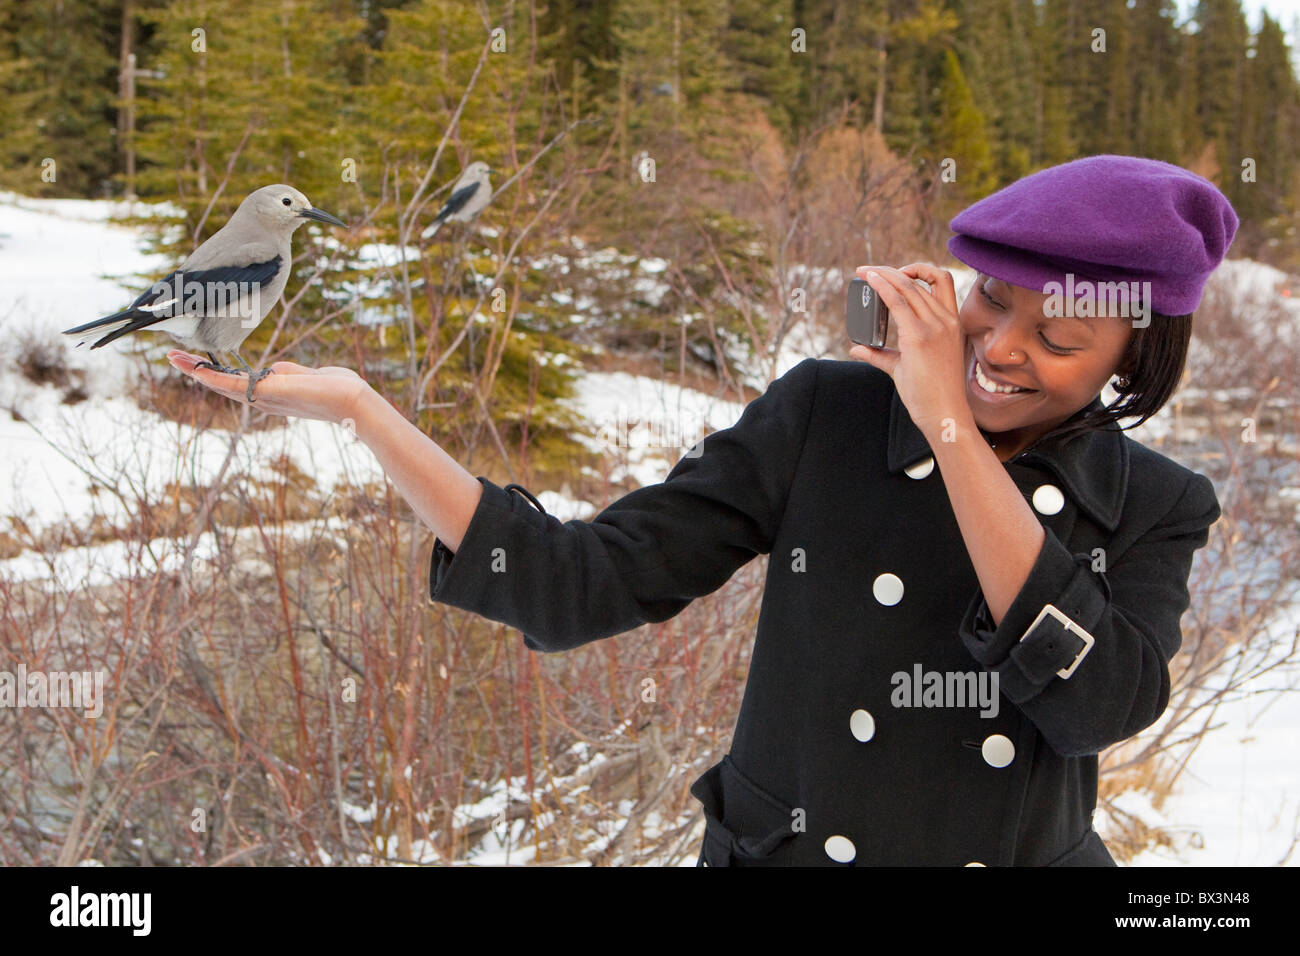 Eine junge Frau hält einen Vogel In der Hand und nimmt ein Bild mit ihrer Kamera; Lake Louise, Alberta, Kanada Stockfoto